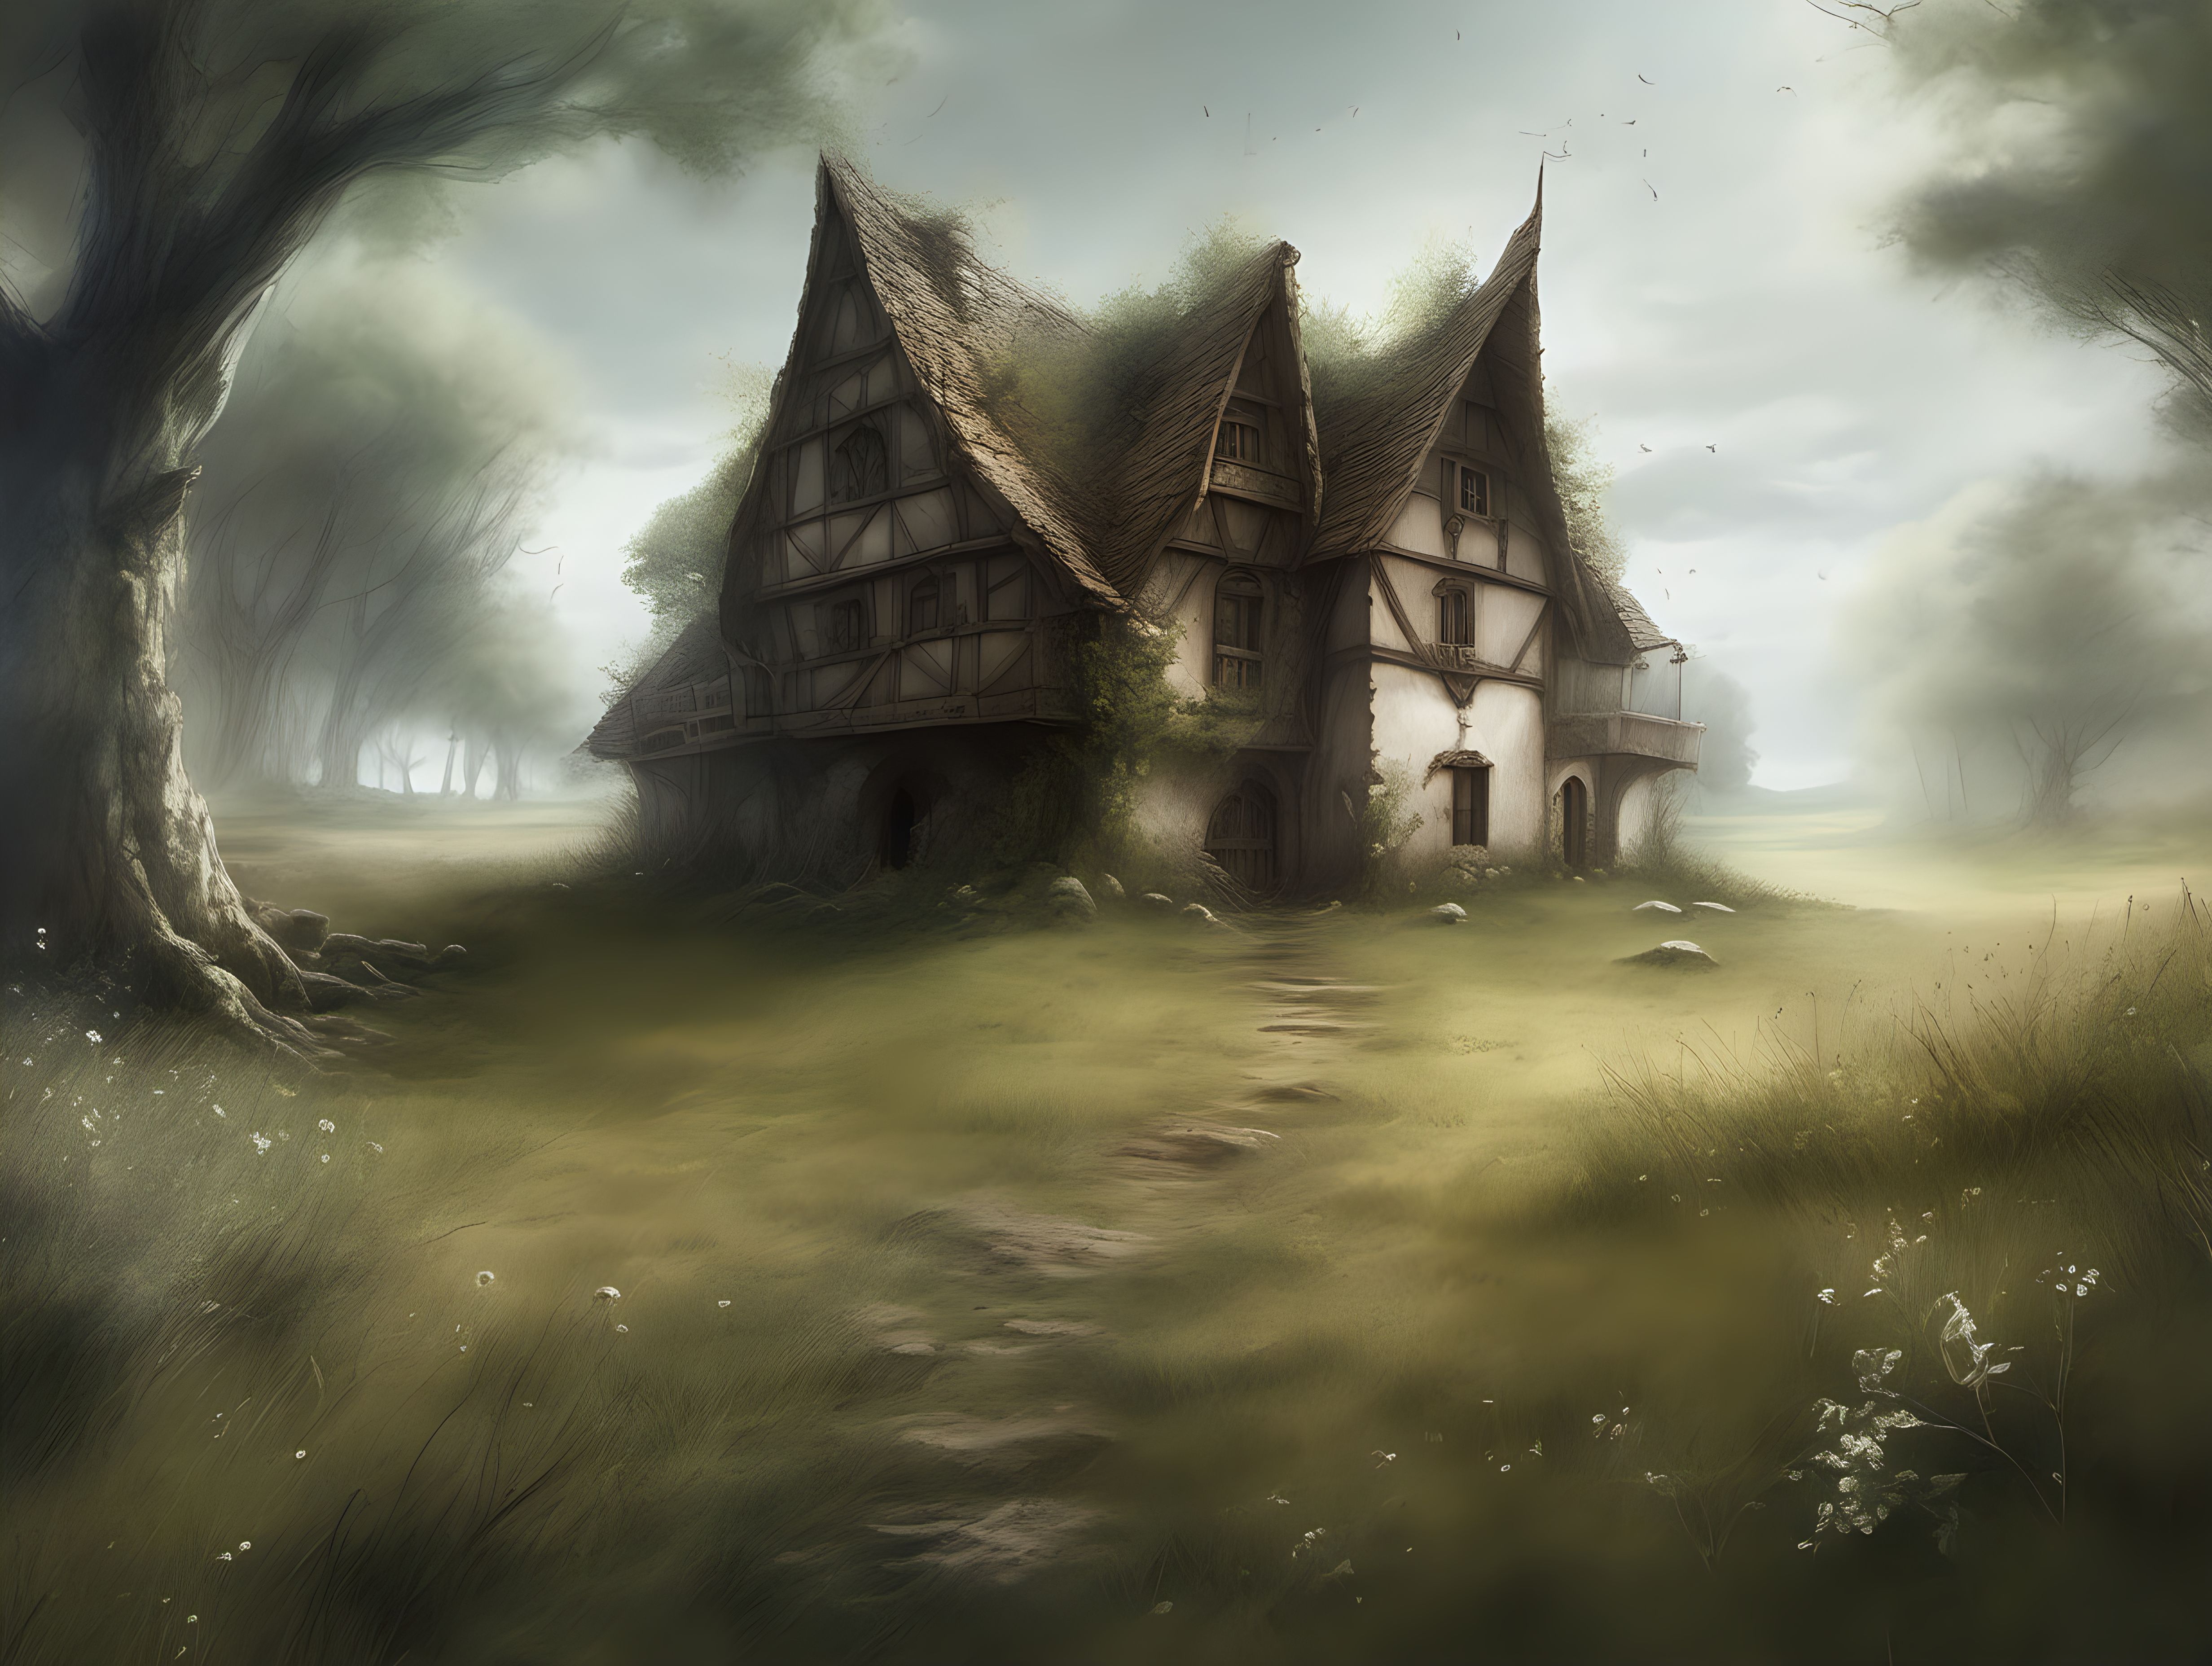 genera una ilustración estilo Luis Royo de una casa medieval en medio de un prado, rodeado por un bosque de fantasía



